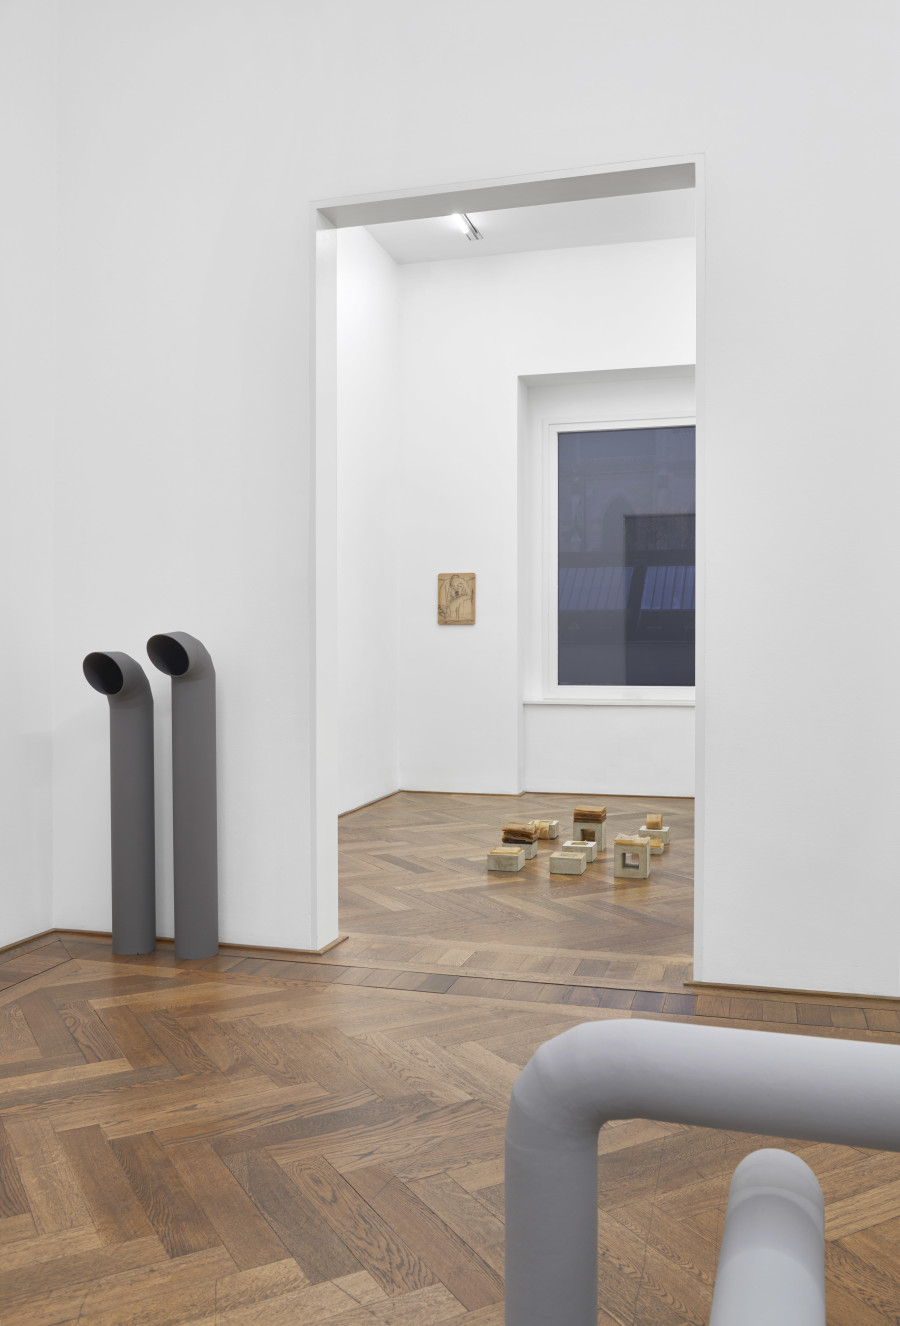 Regionale 24, Davor, danach und alles dazwischen, Kunsthalle Basel, 2023, exhibition view, photo: Philipp Hänger / Kunsthalle Basel